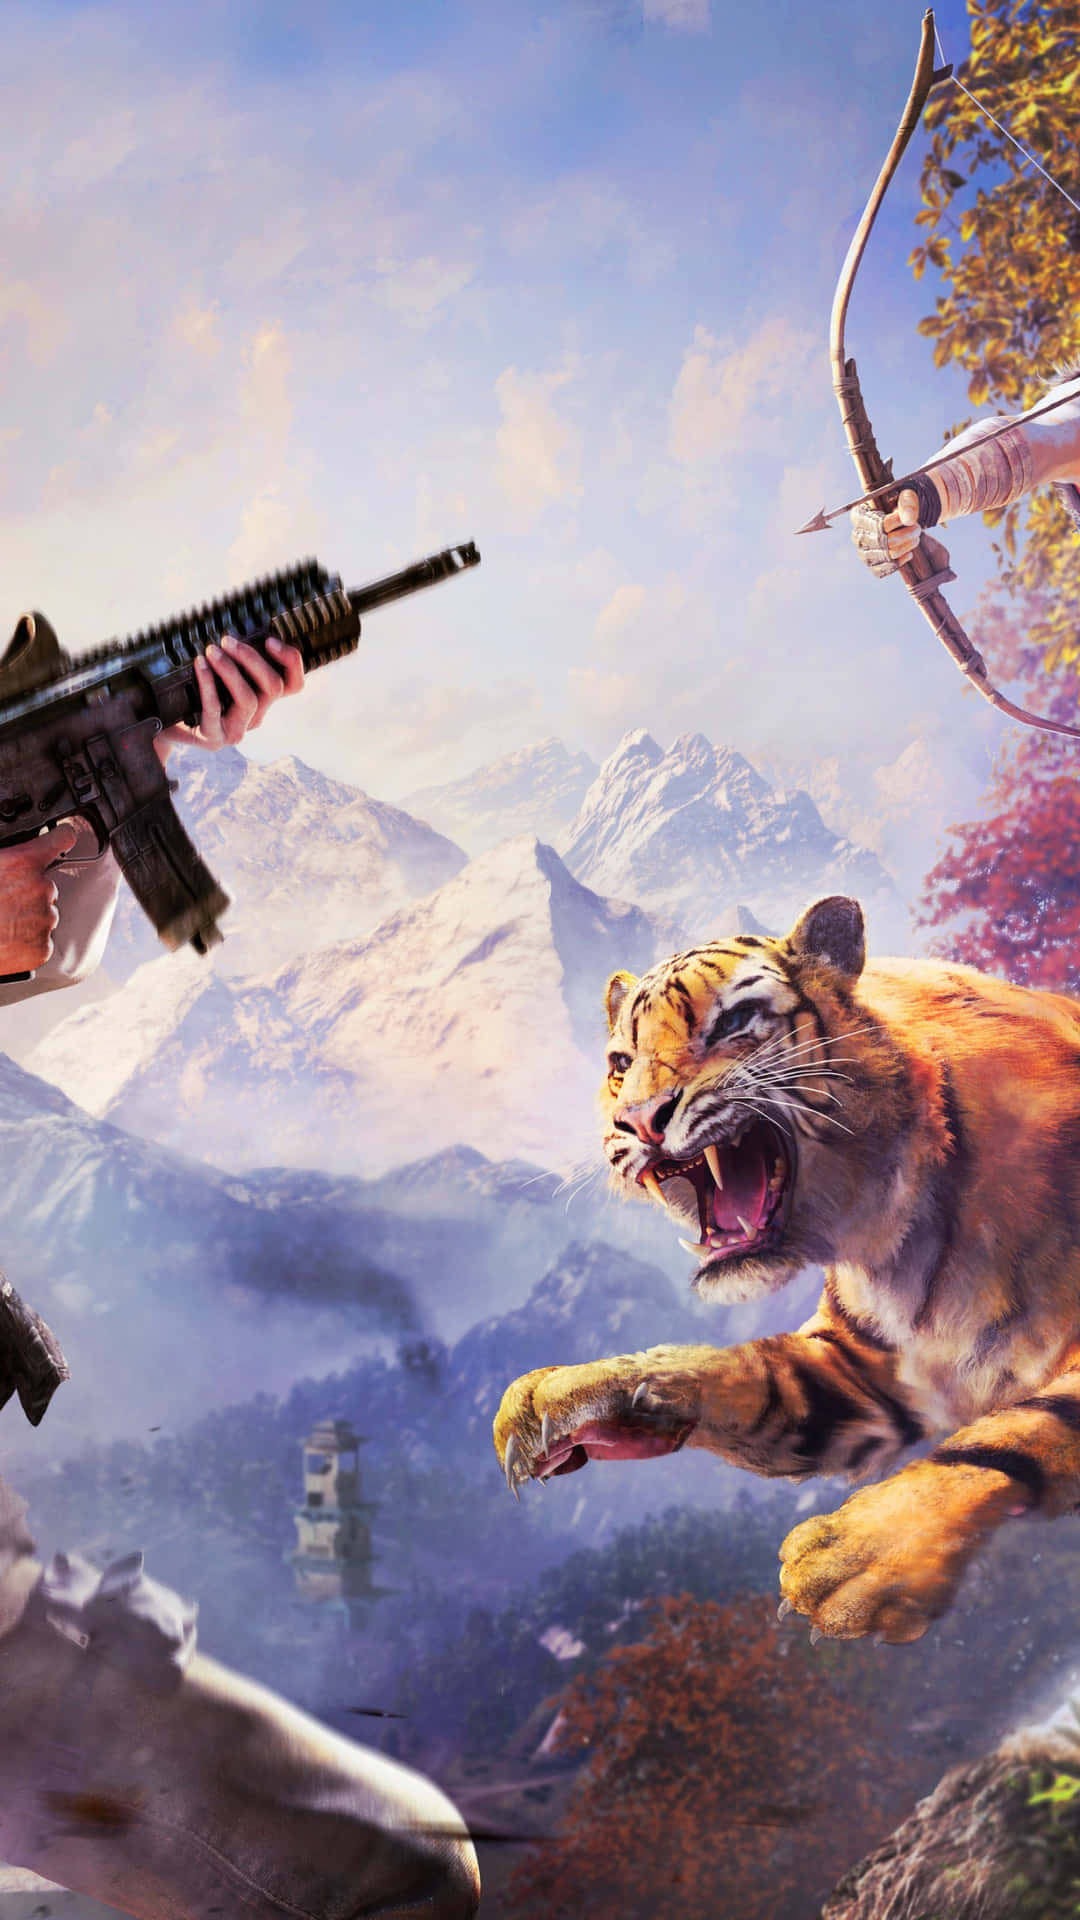 Træd ind i et spændende eventyr og udforsk Kyrat med Far Cry 4. Wallpaper